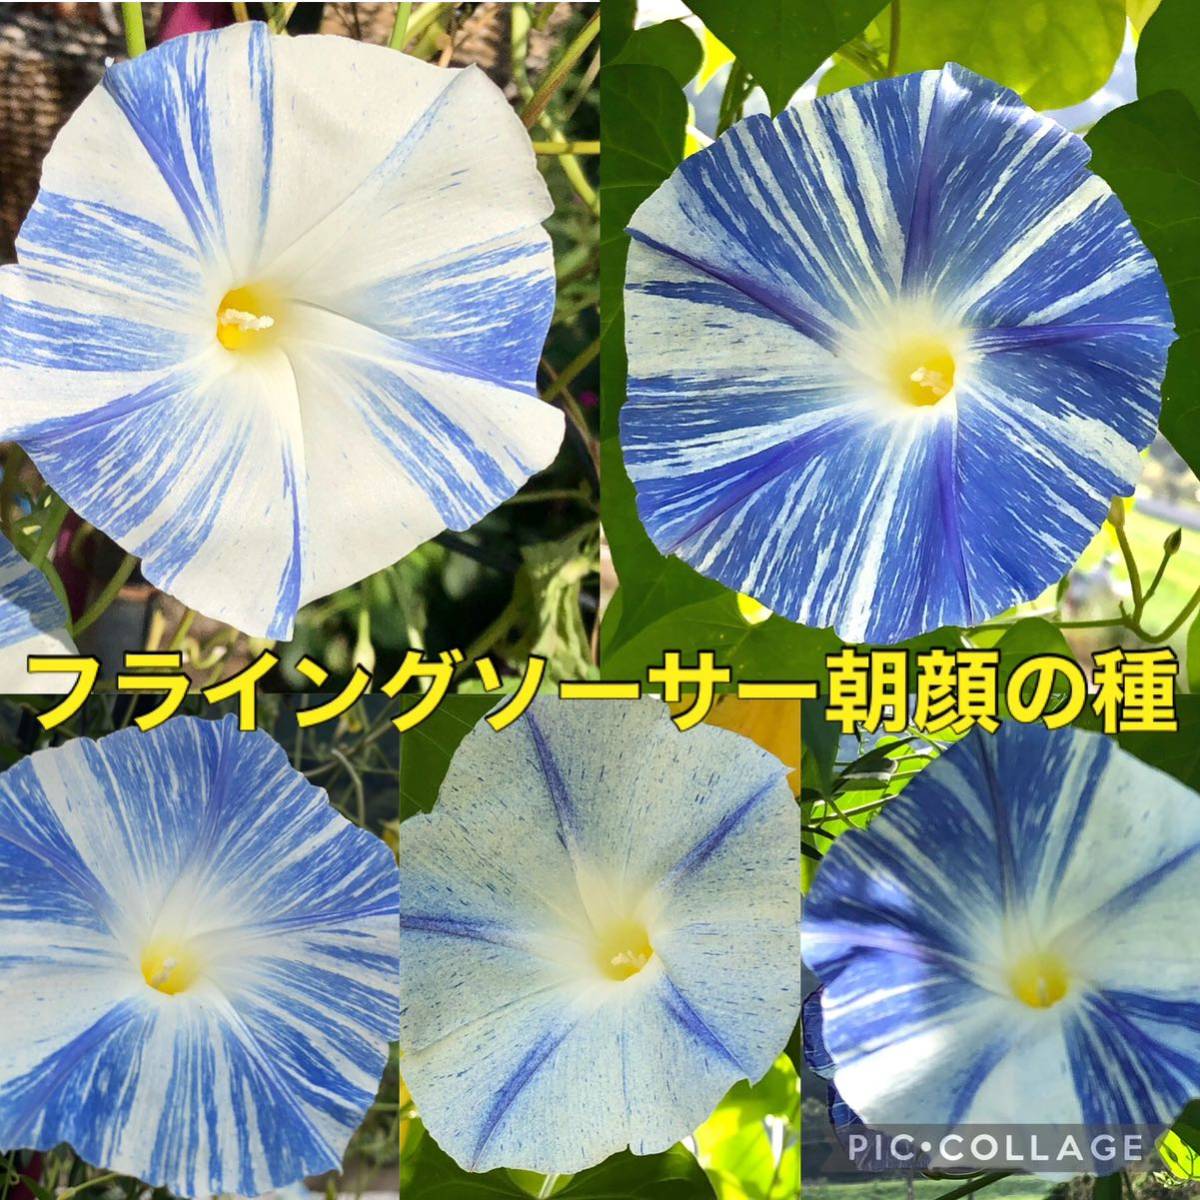 Летающая тарелка Asahi Flower Seed 2